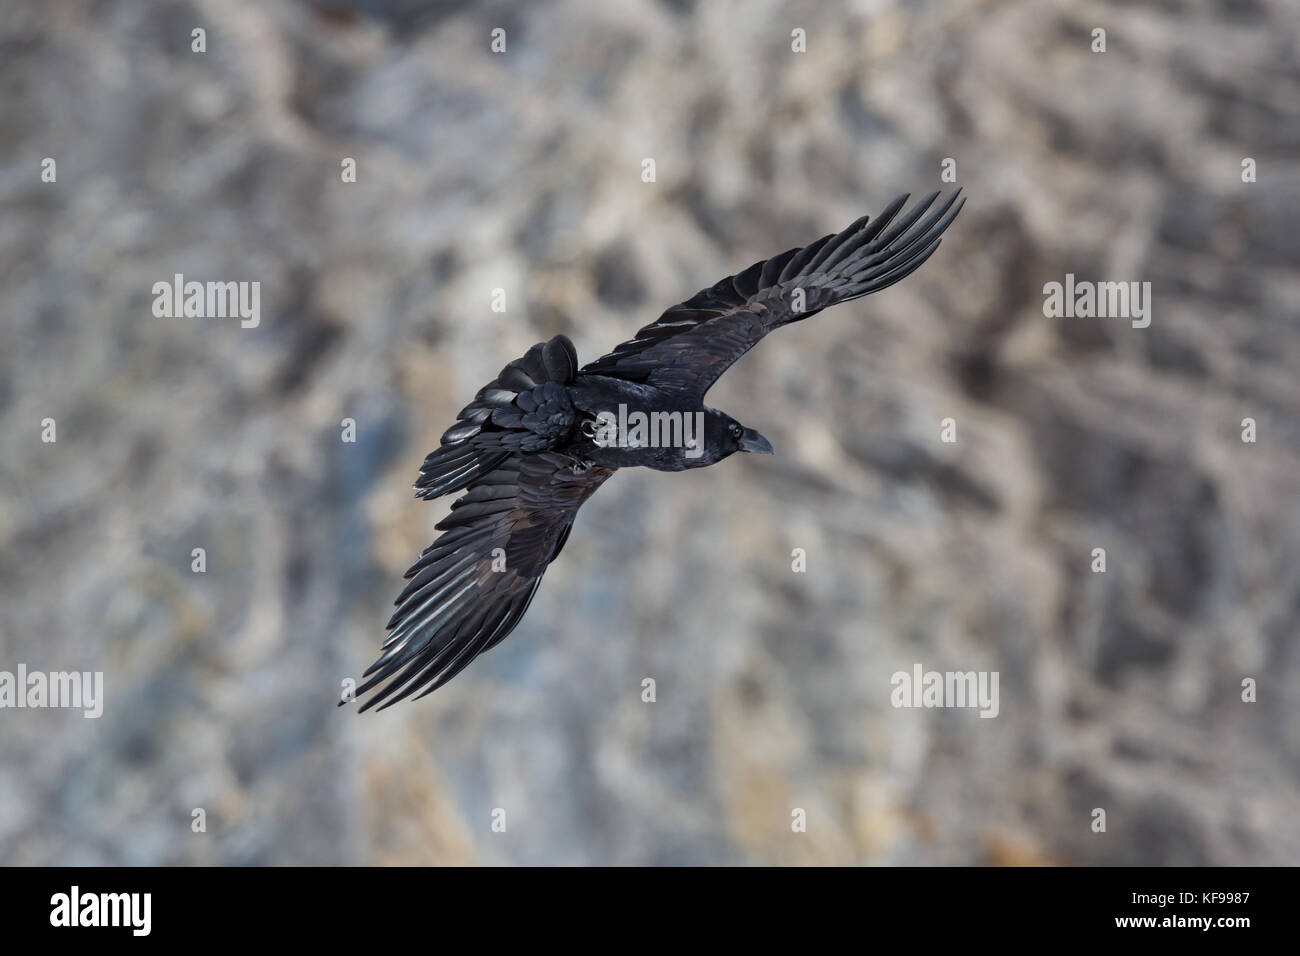 Ritratto del nord naturale corvo imperiale (Corvus corax) in volo con sfondo roccioso Foto Stock